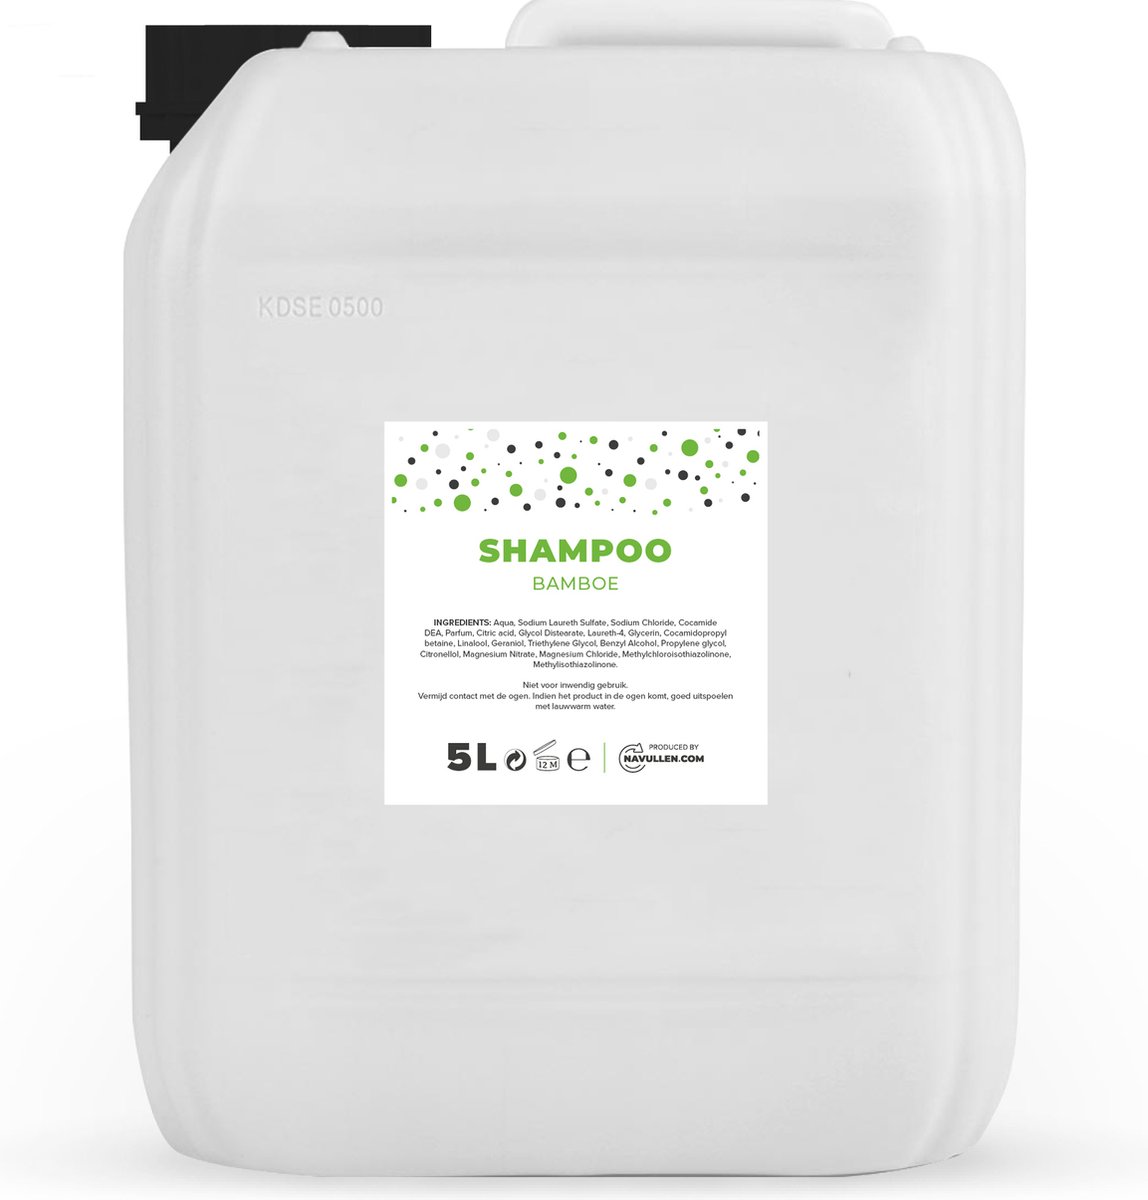 Shampoo - Bamboe - Parelmoer - 5 Liter - Jerrycan - Navulling - Navullen